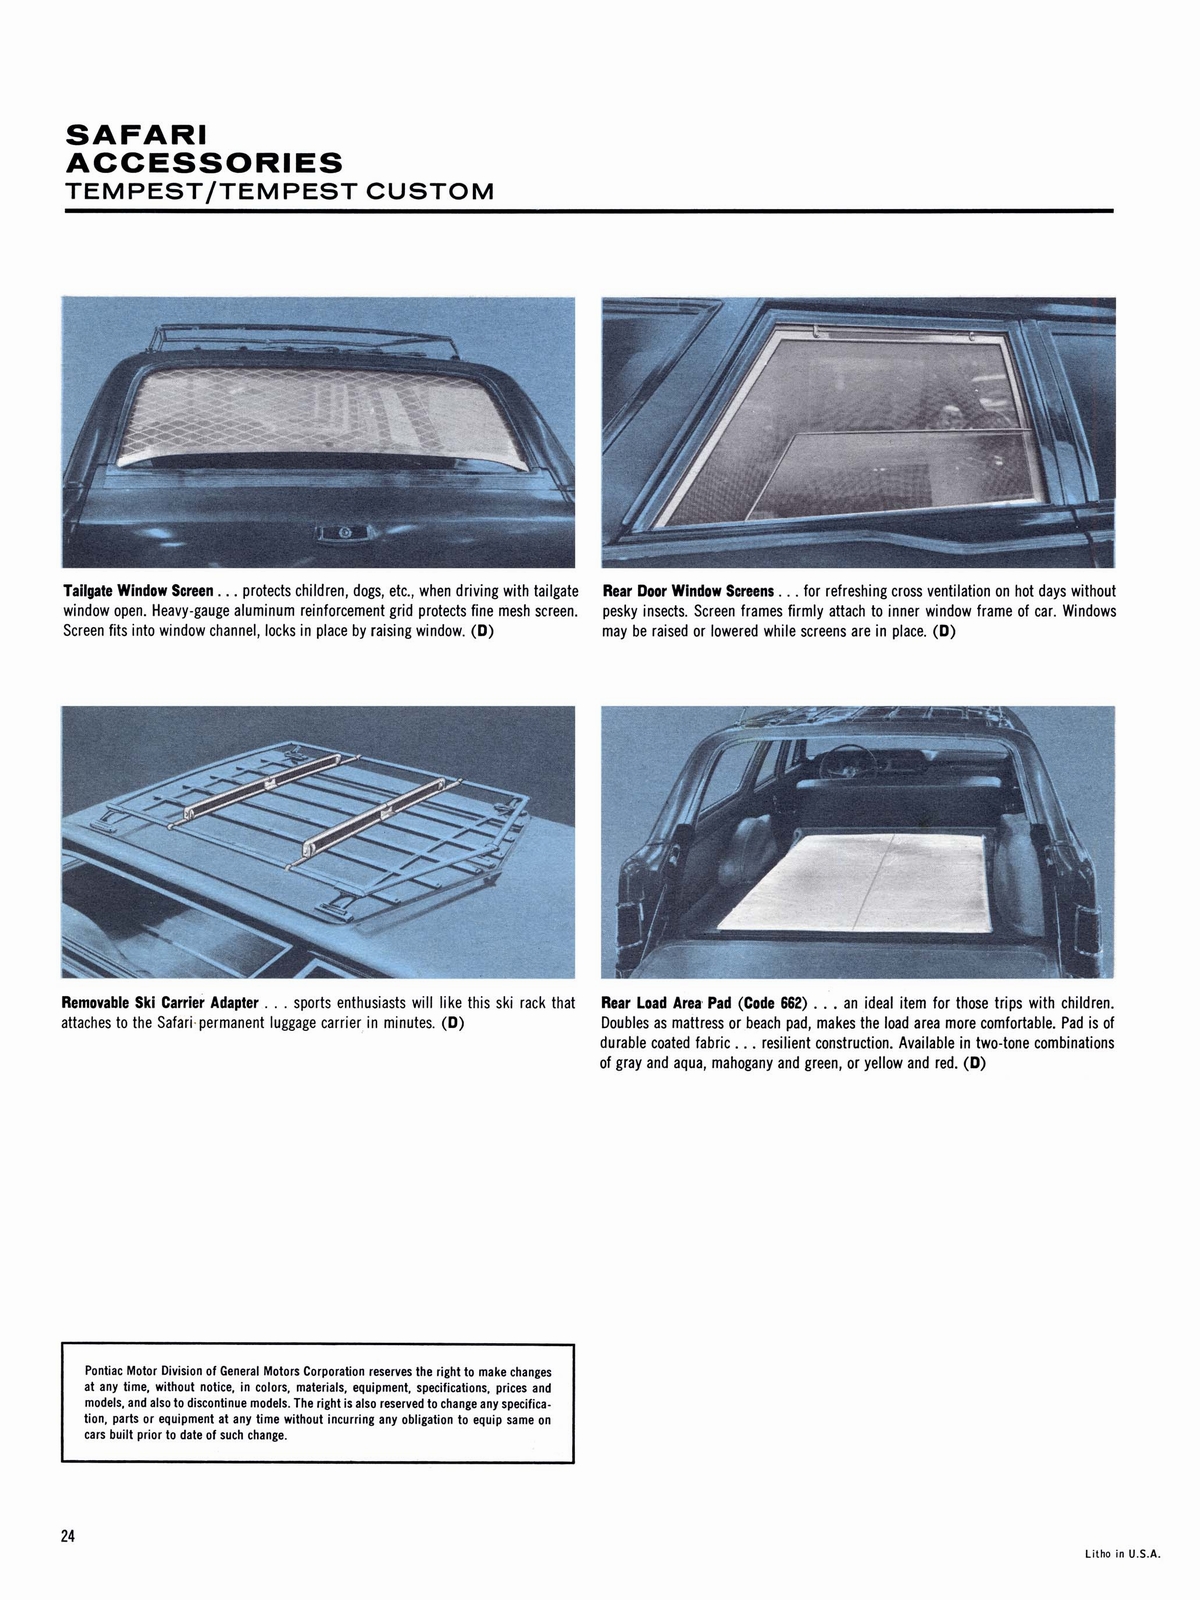 n_1964 Pontiac Accessories-24.jpg